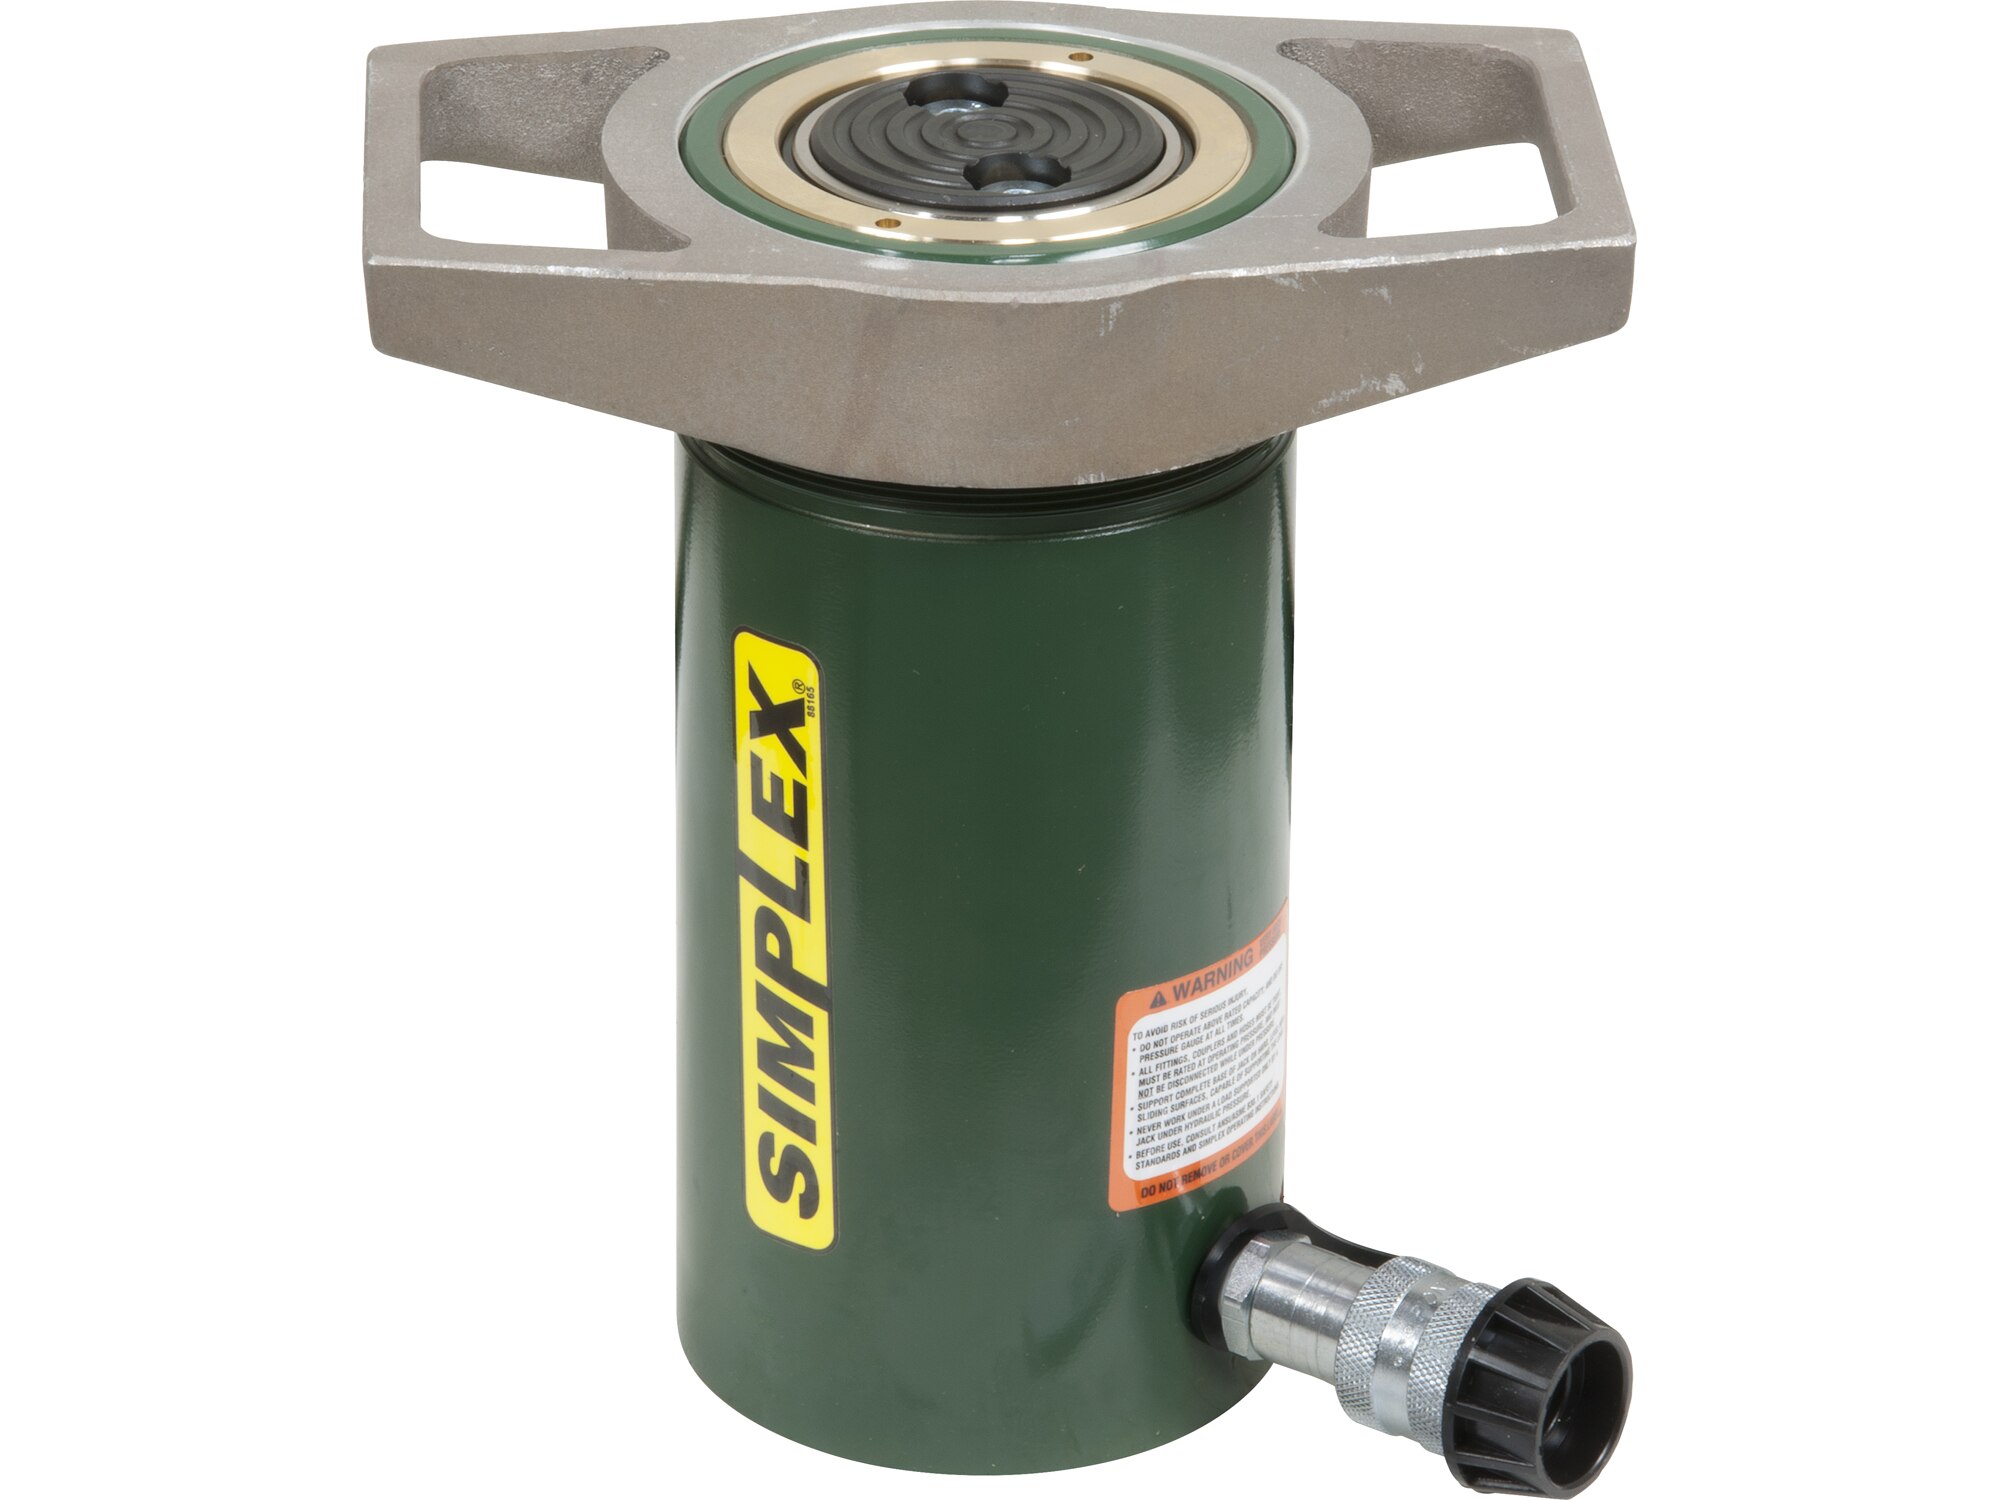 Simplex R101 General Purpose Spring Return Hydraulic Cylinder 10 Ton 1” Stroke 